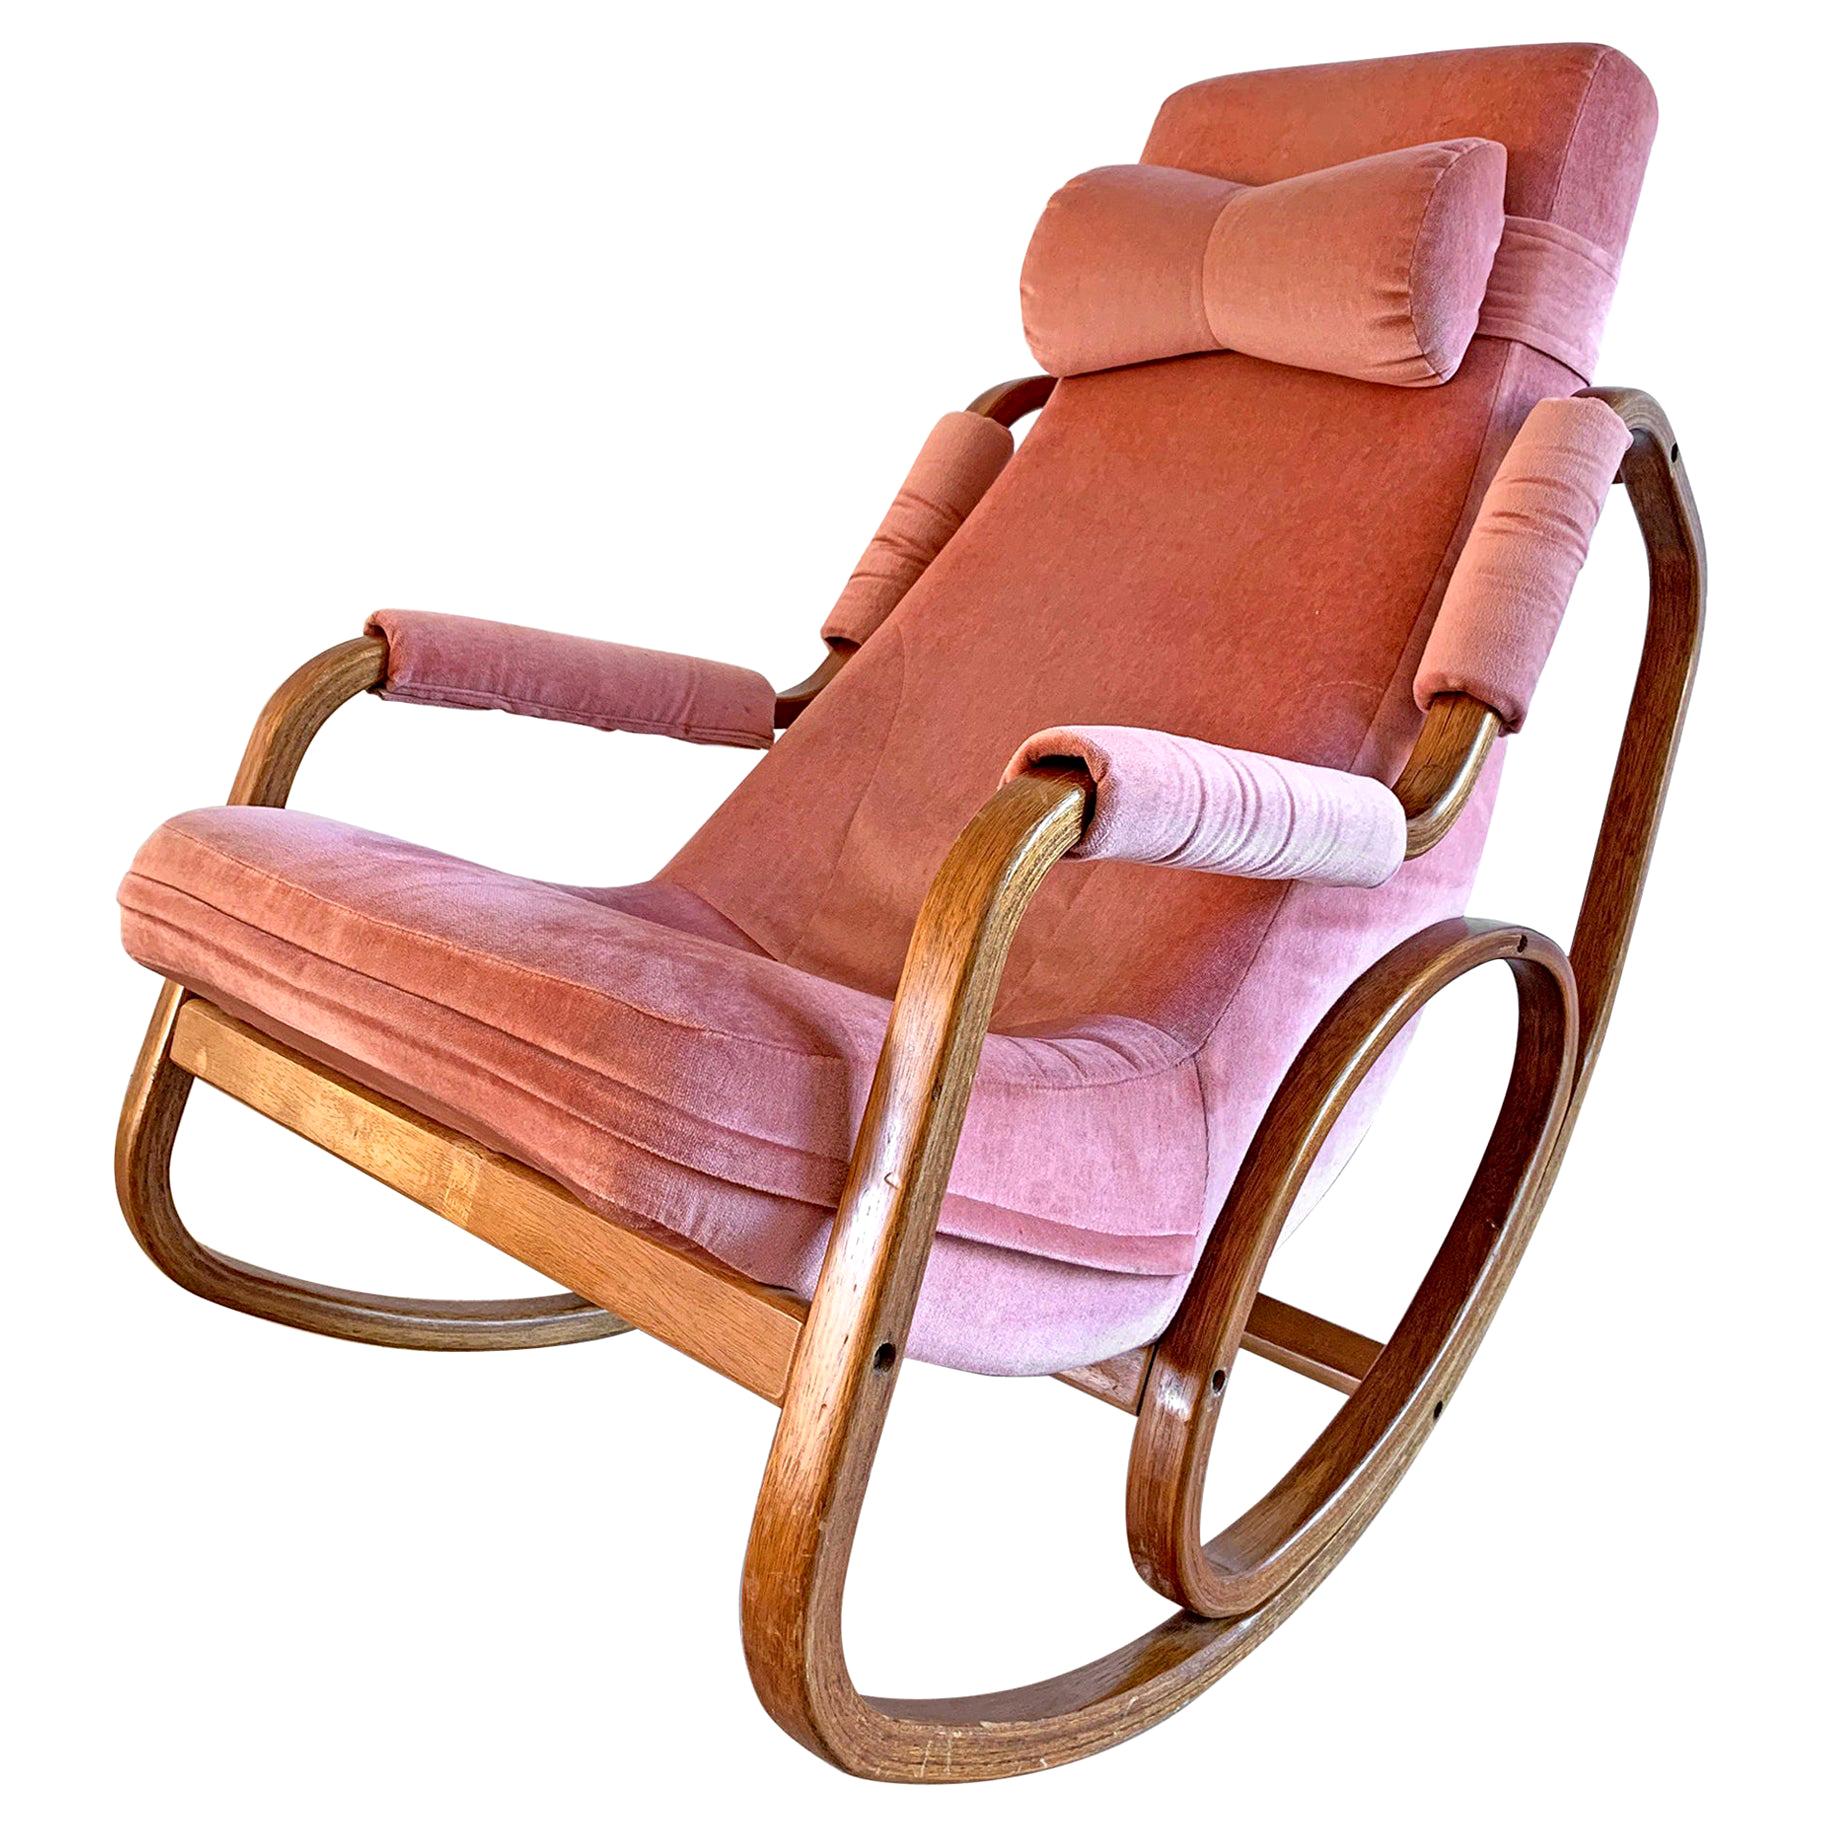 Danish Modern Midcentury Bentwood Rocking Chair in Pink Velvet at 1stDibs |  hot pink rocking chair, pink velvet rocking chair, pink rocking chair